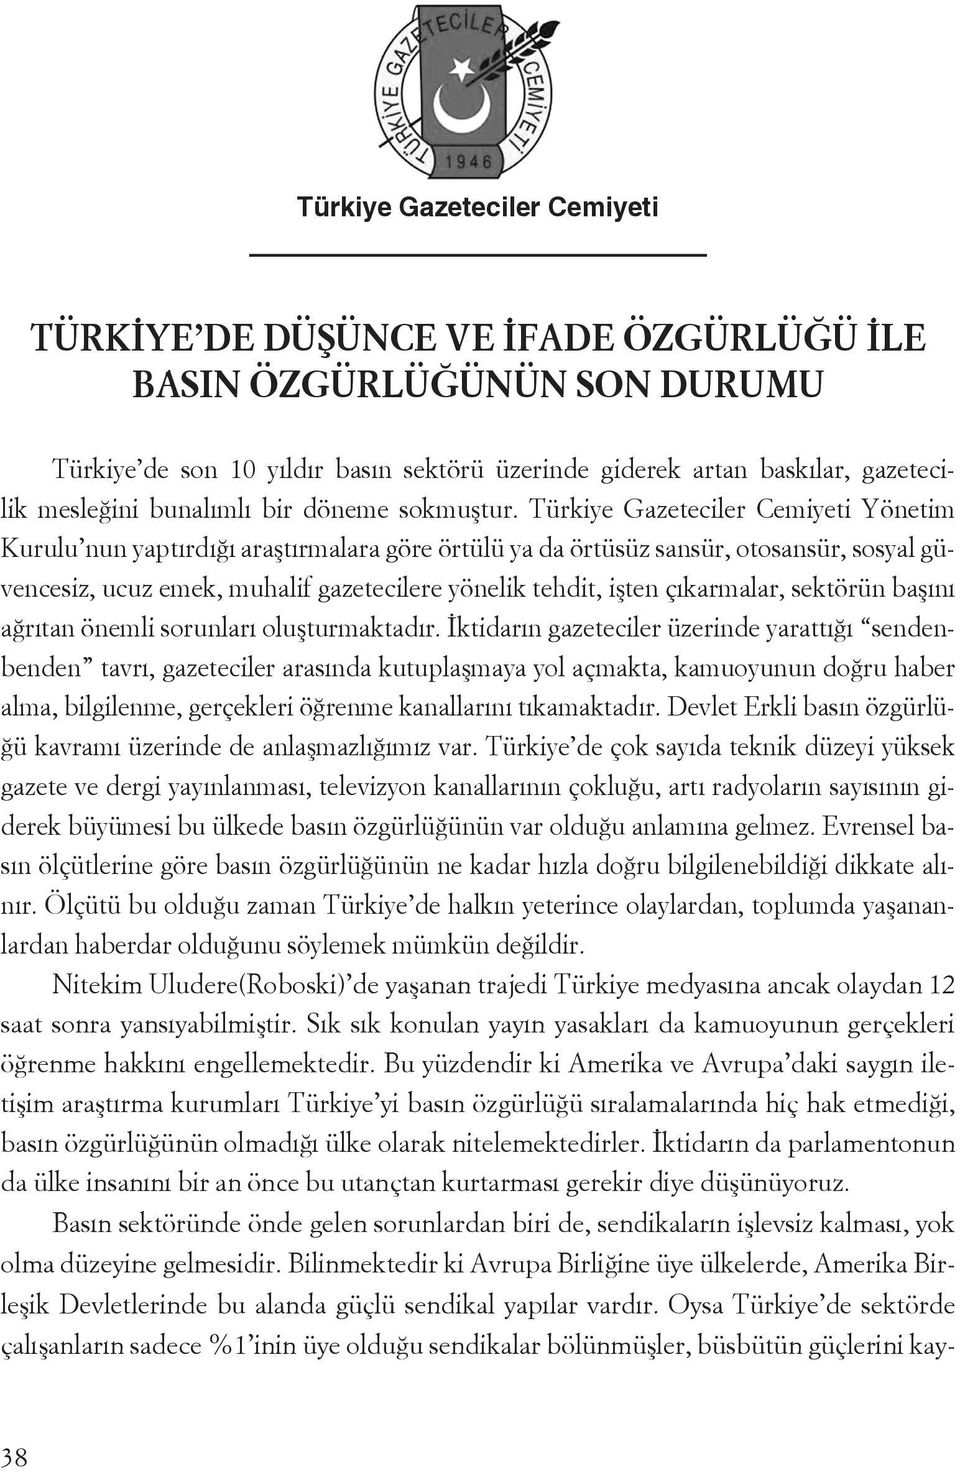 Türkiye Gazeteciler Cemiyeti Yönetim Kurulu nun yaptırdığı araştırmalara göre örtülü ya da örtüsüz sansür, otosansür, sosyal güvencesiz, ucuz emek, muhalif gazetecilere yönelik tehdit, işten